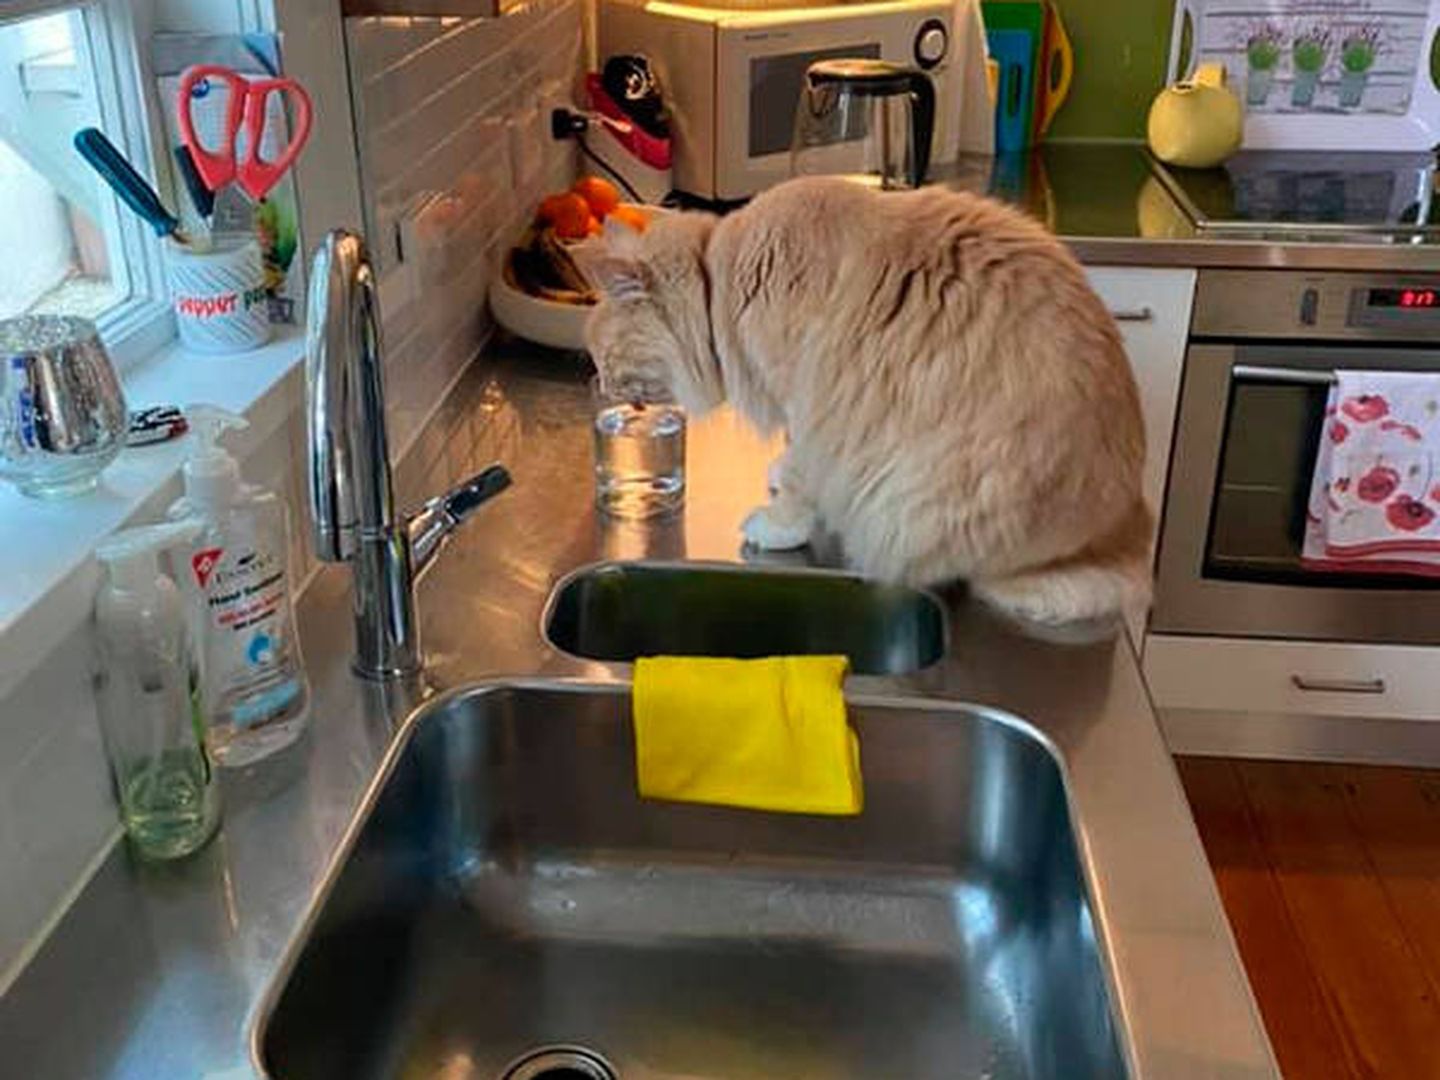 El felino recibe atenciones en cualquier casa en la que entra (Foto: Facebook/The Wondrous Adventures of Mittens)